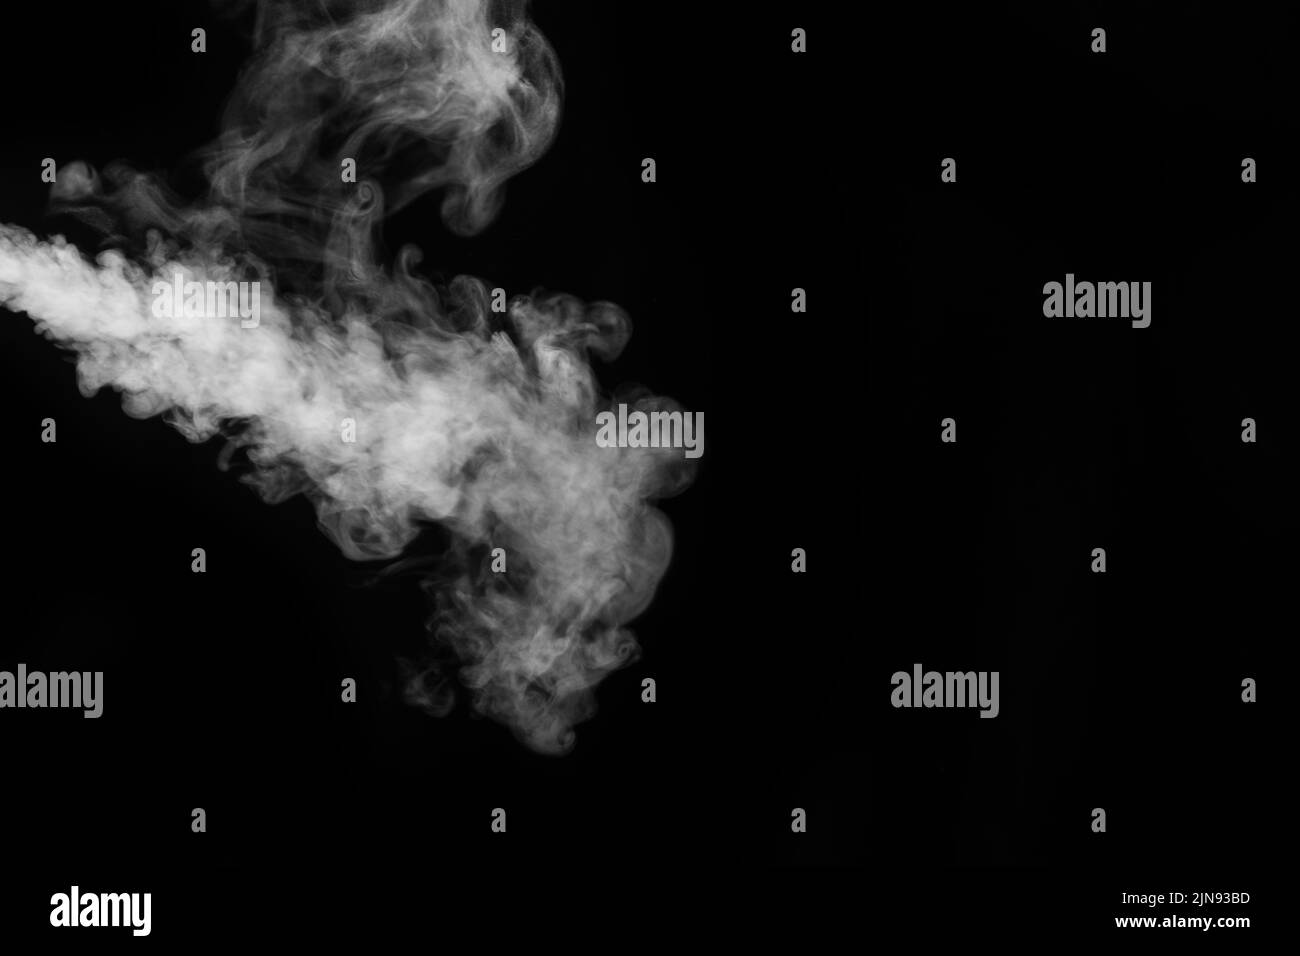 Vapor blanco, humo sobre un fondo negro para añadir a sus fotografías. Perfecto humo, vapor, fragancia, incienso. Crea fotos místicas. Humo de fondo Foto de stock